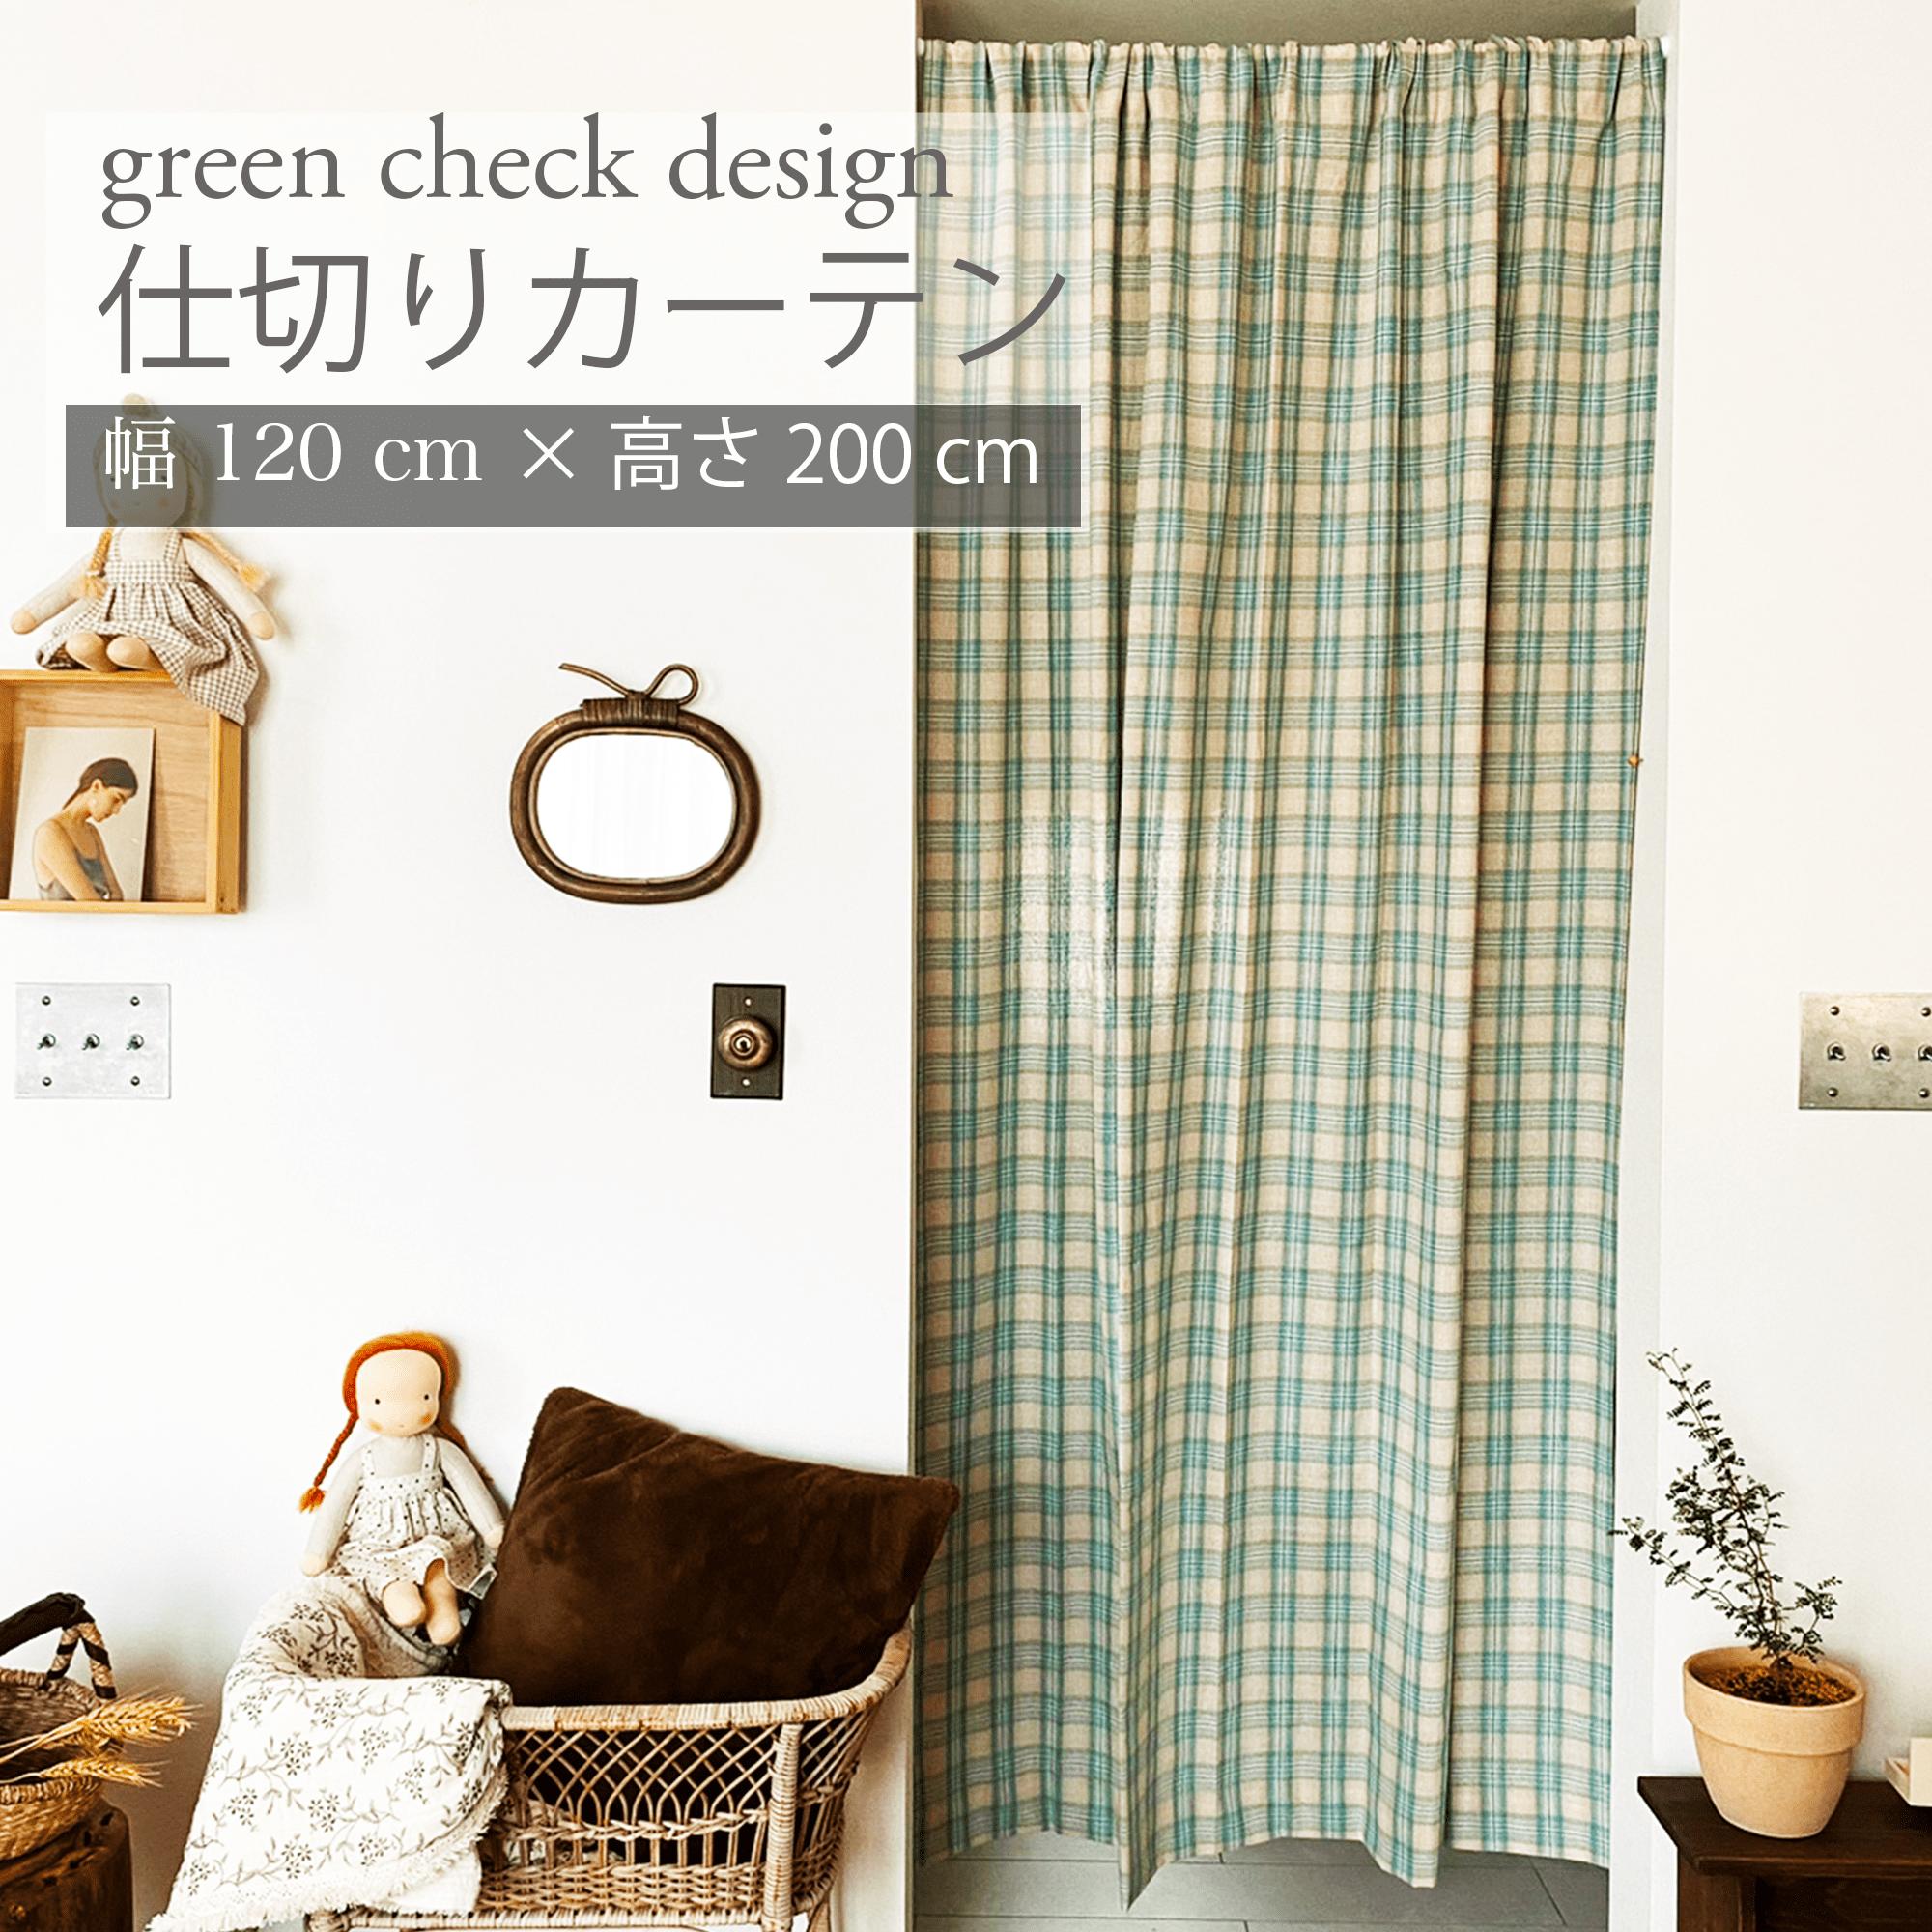 間仕切り カーテン 北欧 カフェカーテン おしゃれ 約120cm 200cm ロング丈 チェック グリーン 緑 部屋 仕切り キッチン リビング かわいい 韓国 ブラインド のれん